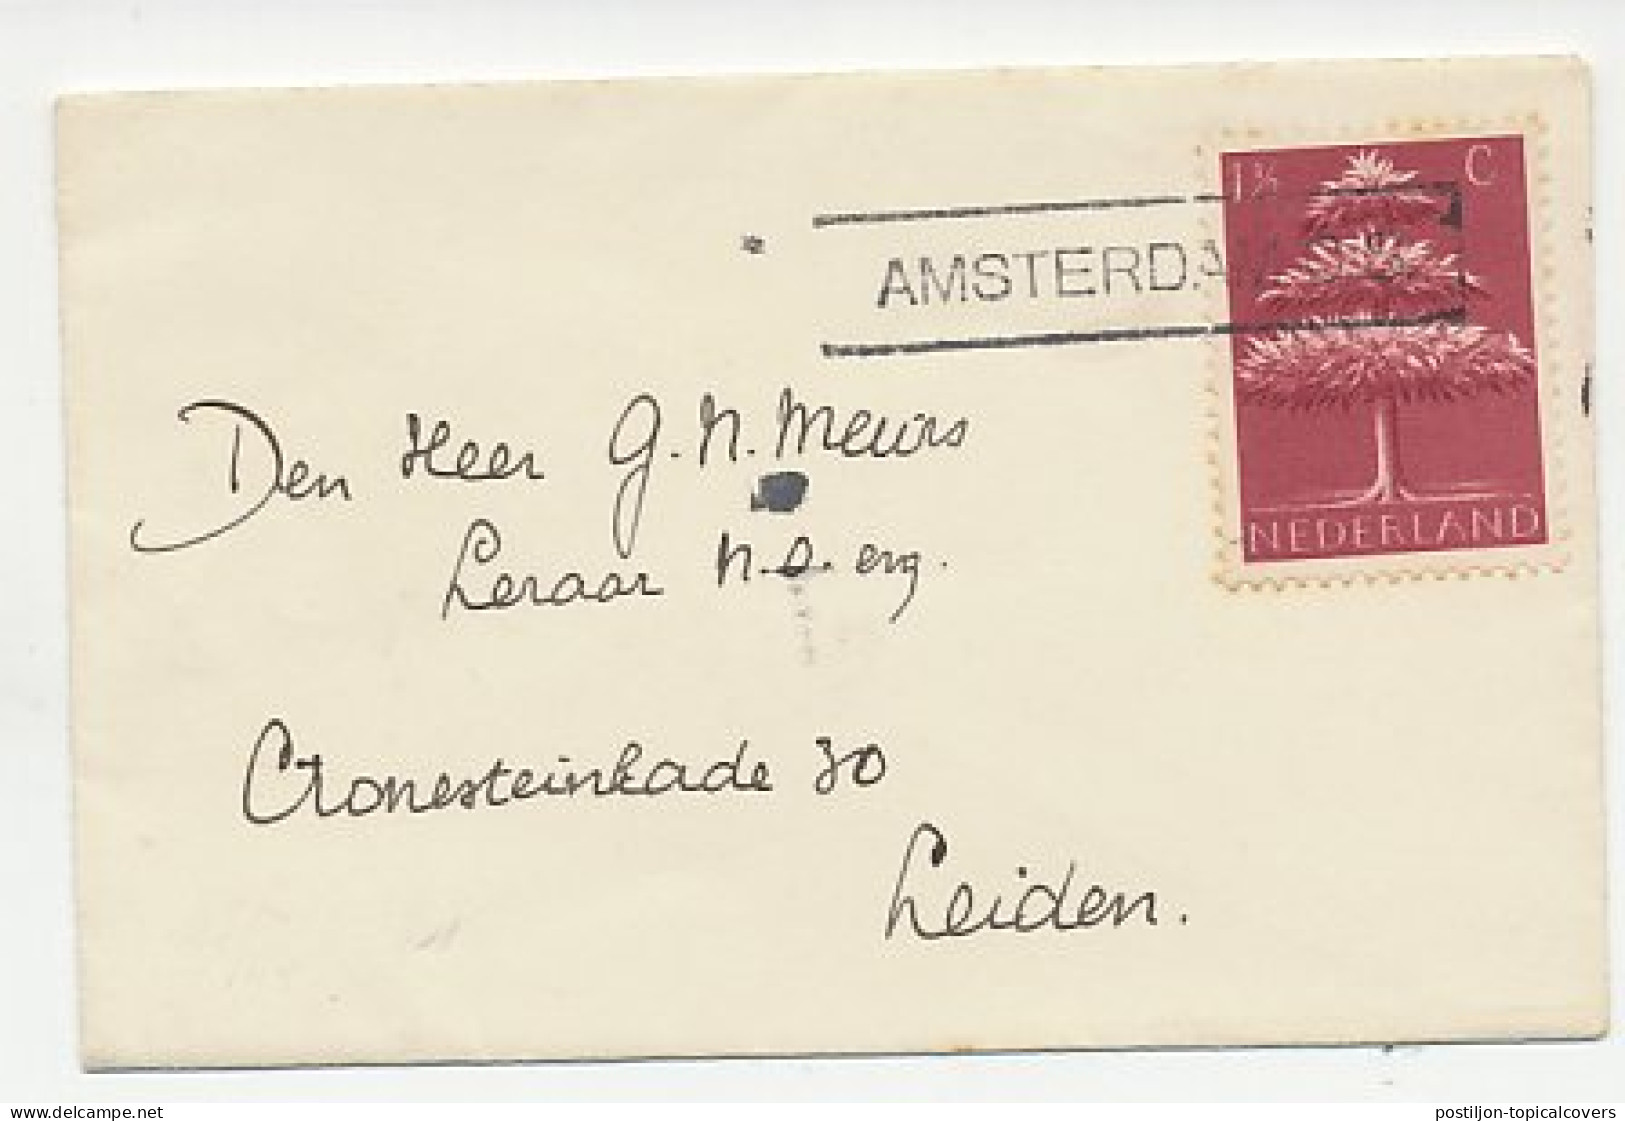 Em Germaanse Symbolen 1943 - Nieuwjaarsstempel Amsterdam - Unclassified